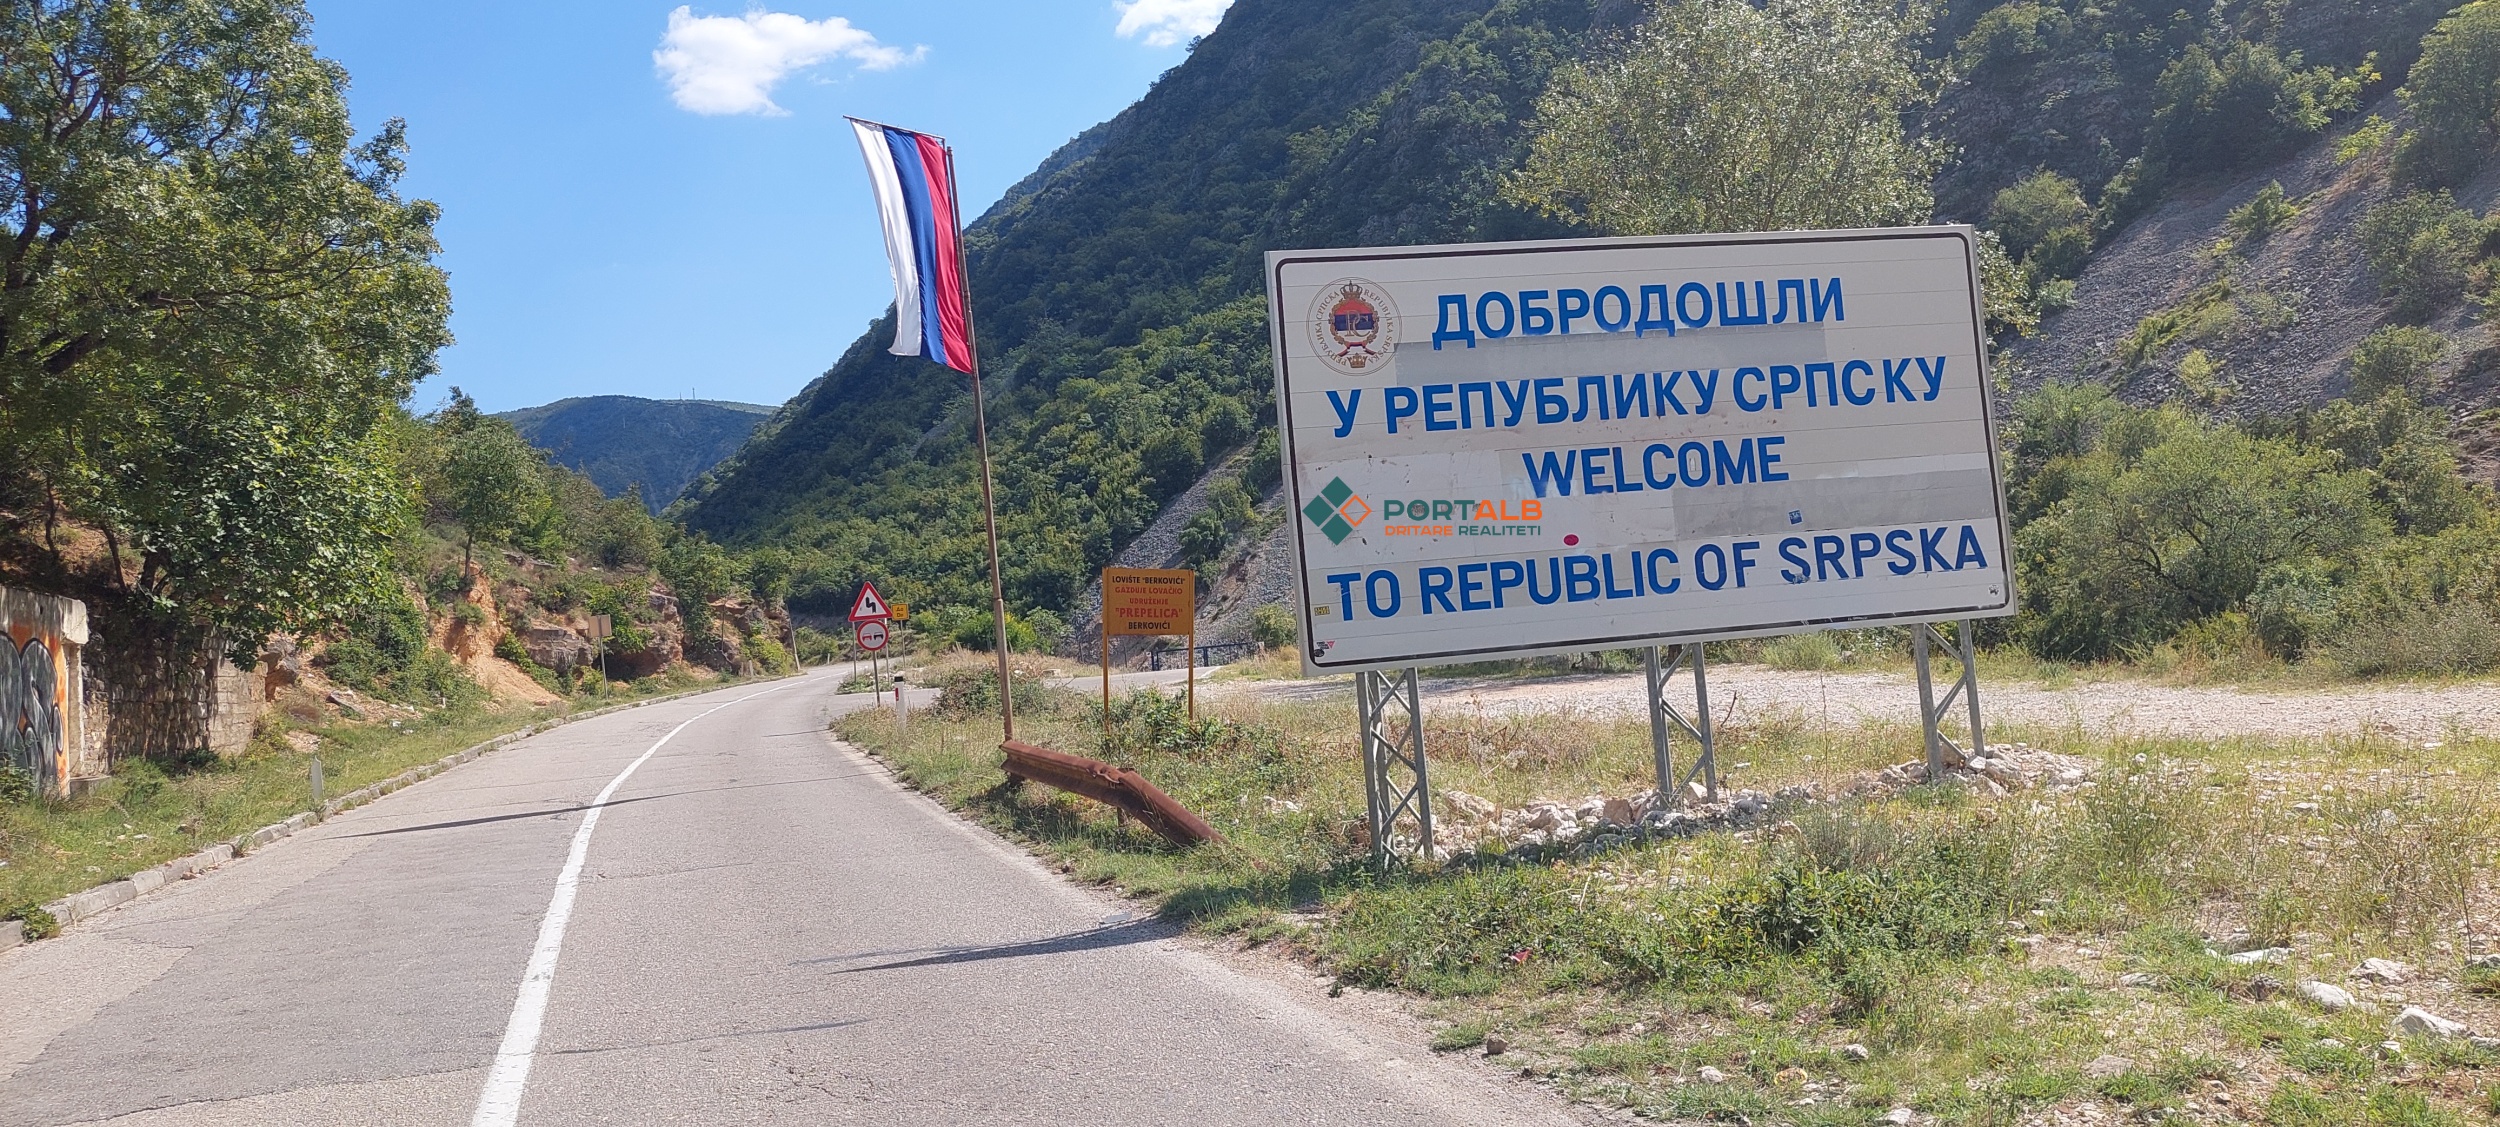 Republika Srpska në Bosnjë e Hercegovinë. Foto nga Faton Curri - Portalb.mk.